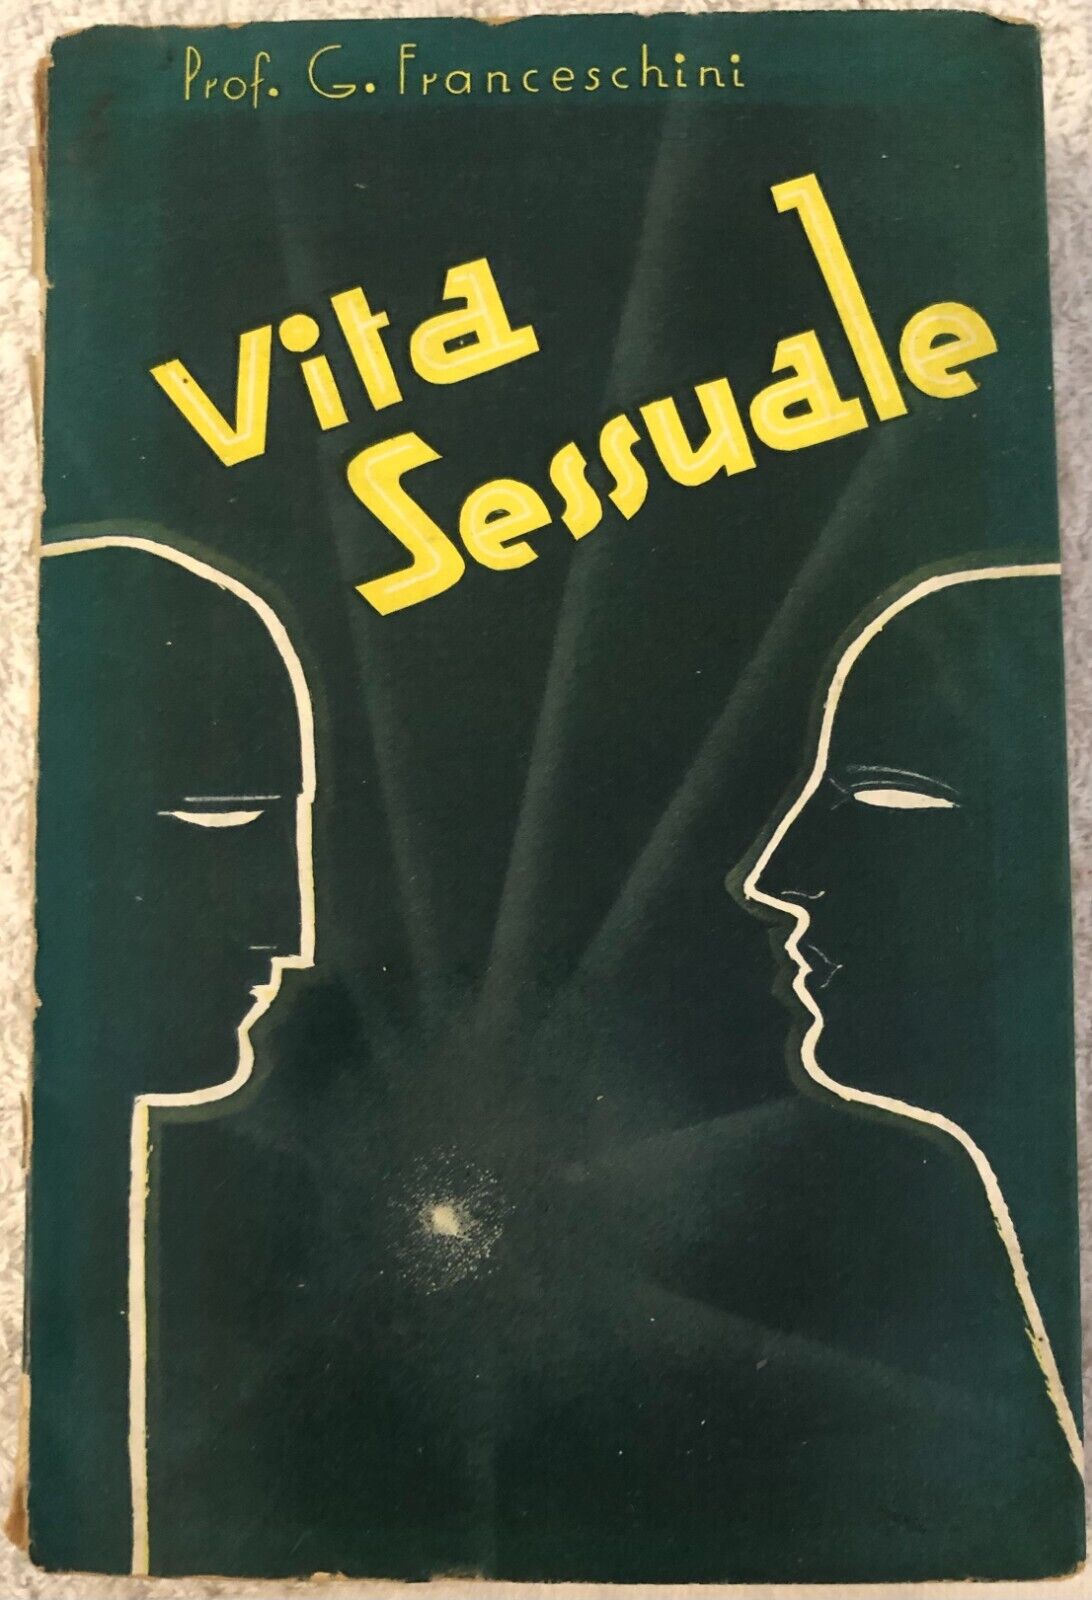 Vita sessuale di Prof. G. Franceschini,  1960,  Editori Ulrico Hoepli Milano